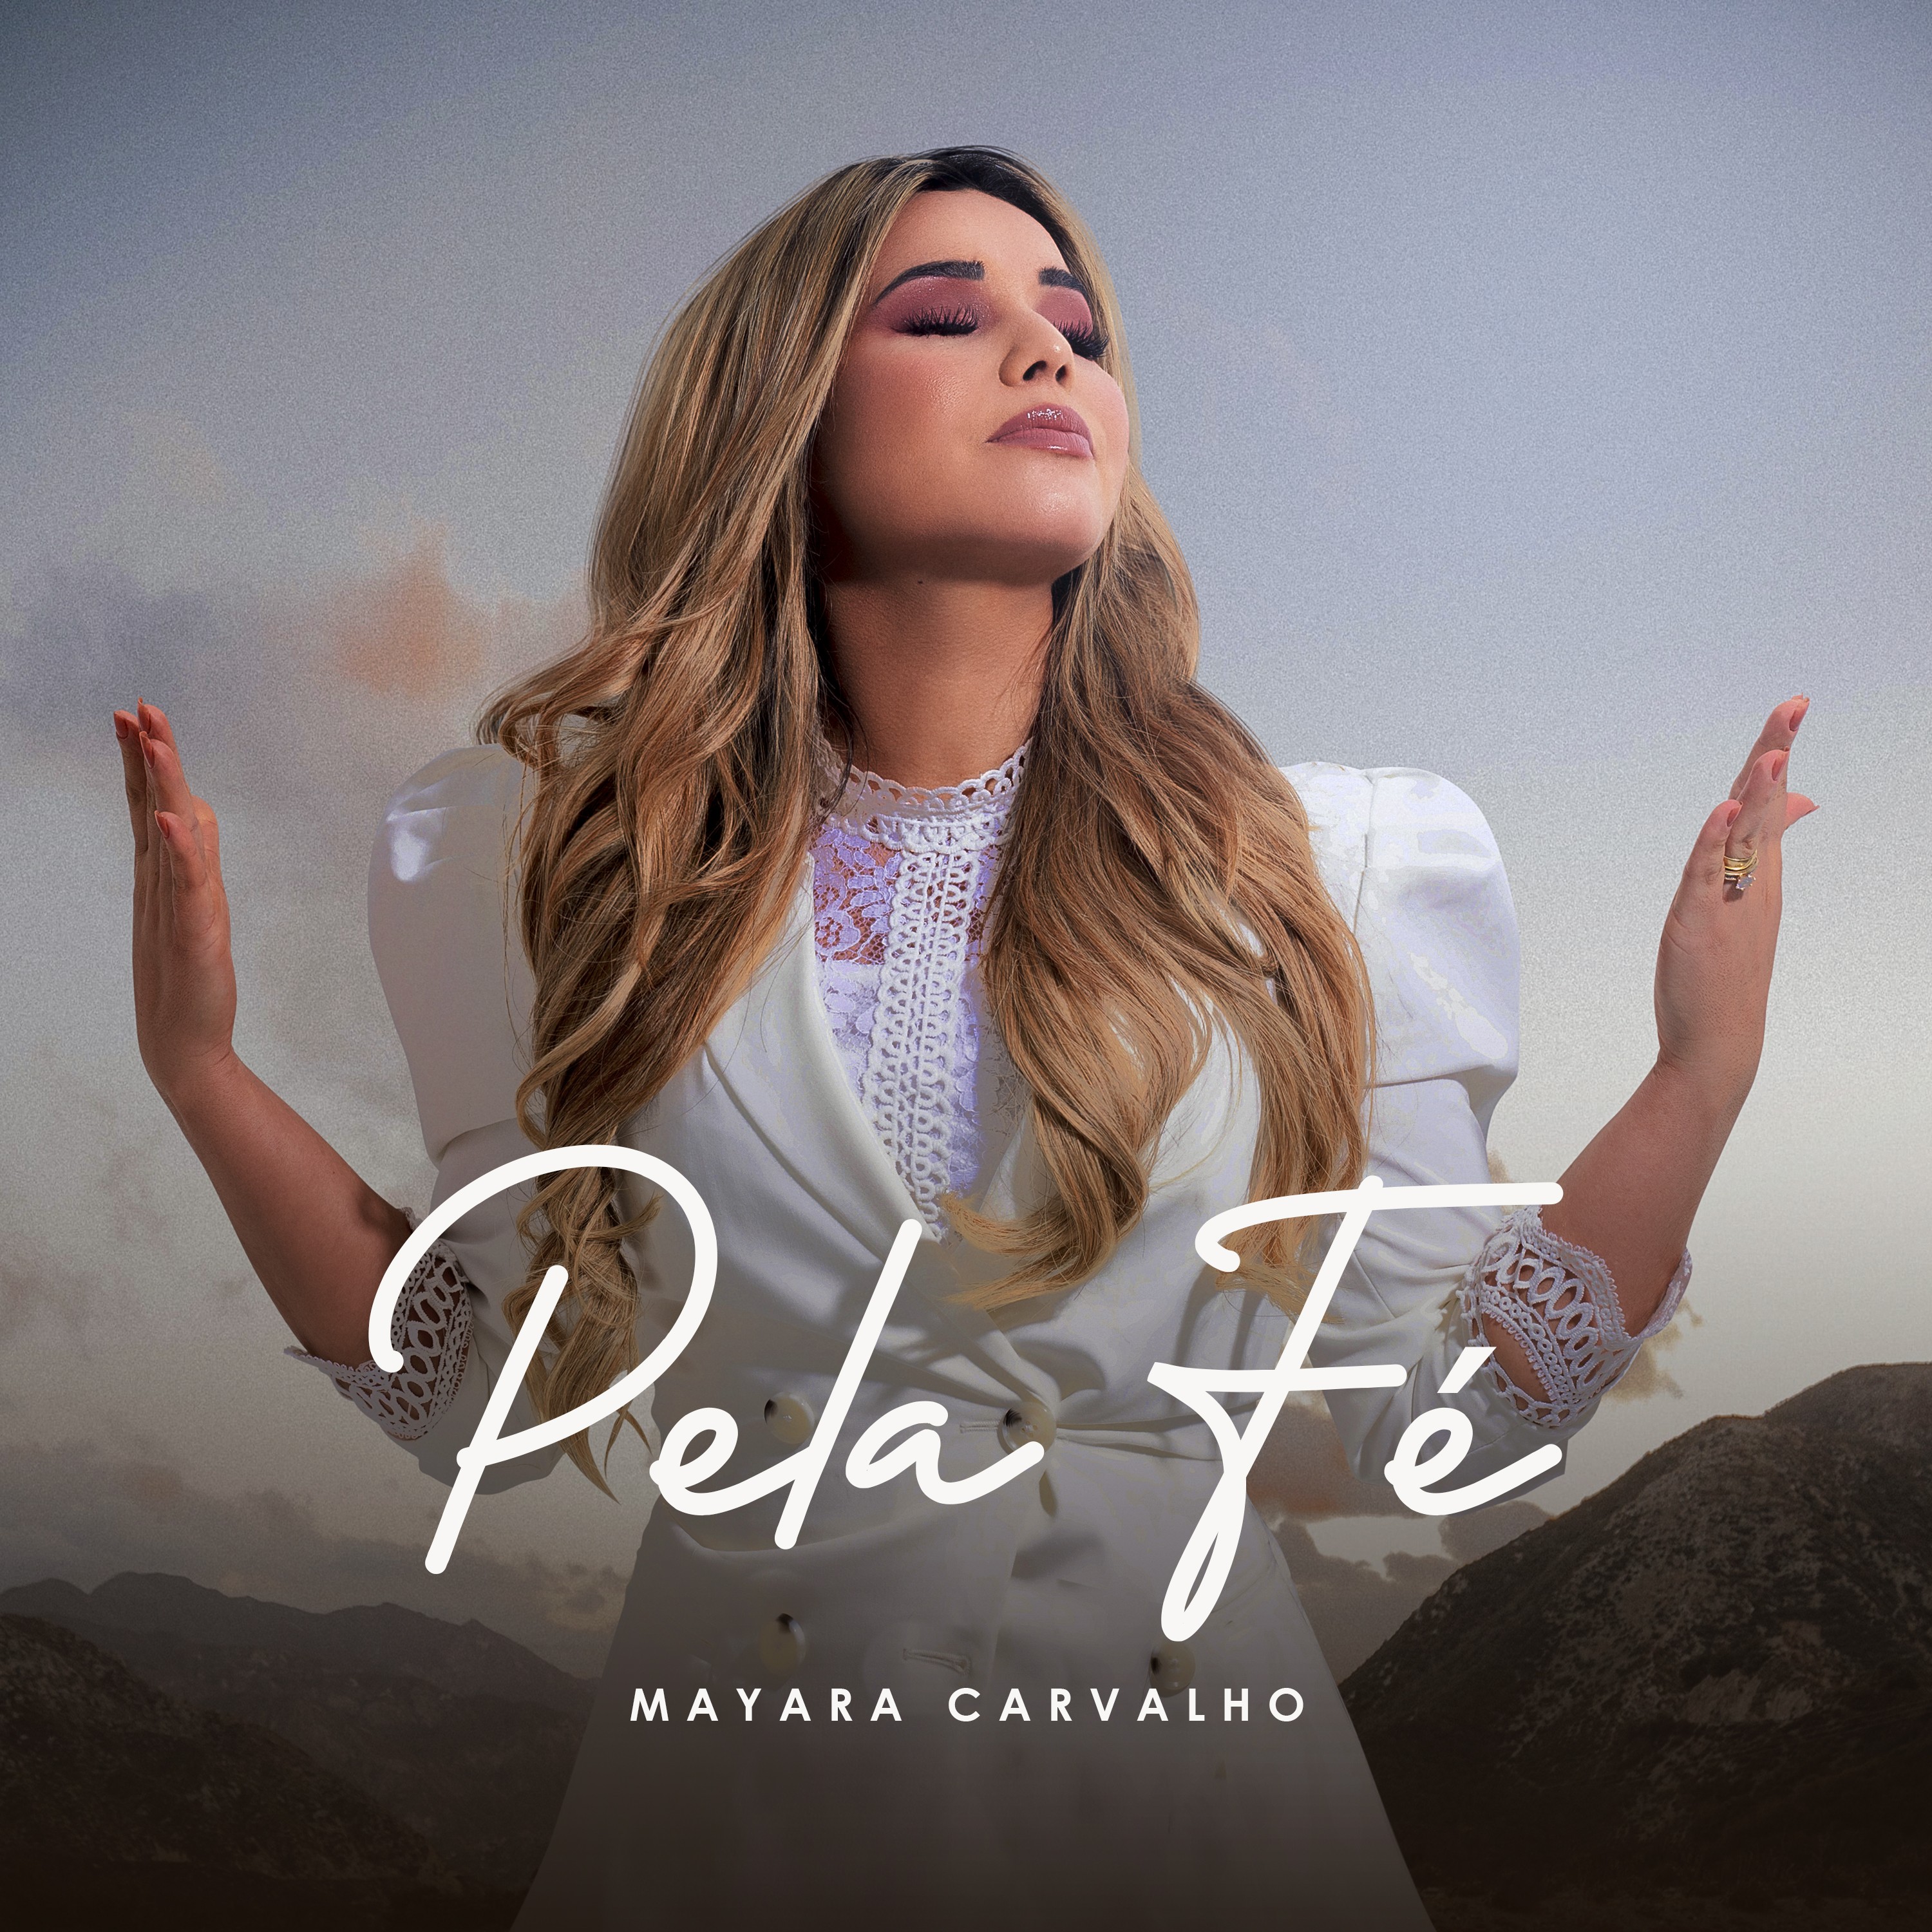 Mayara Carvalho lança “Pela Fé”, um single autoral com força de um testemunho de vida